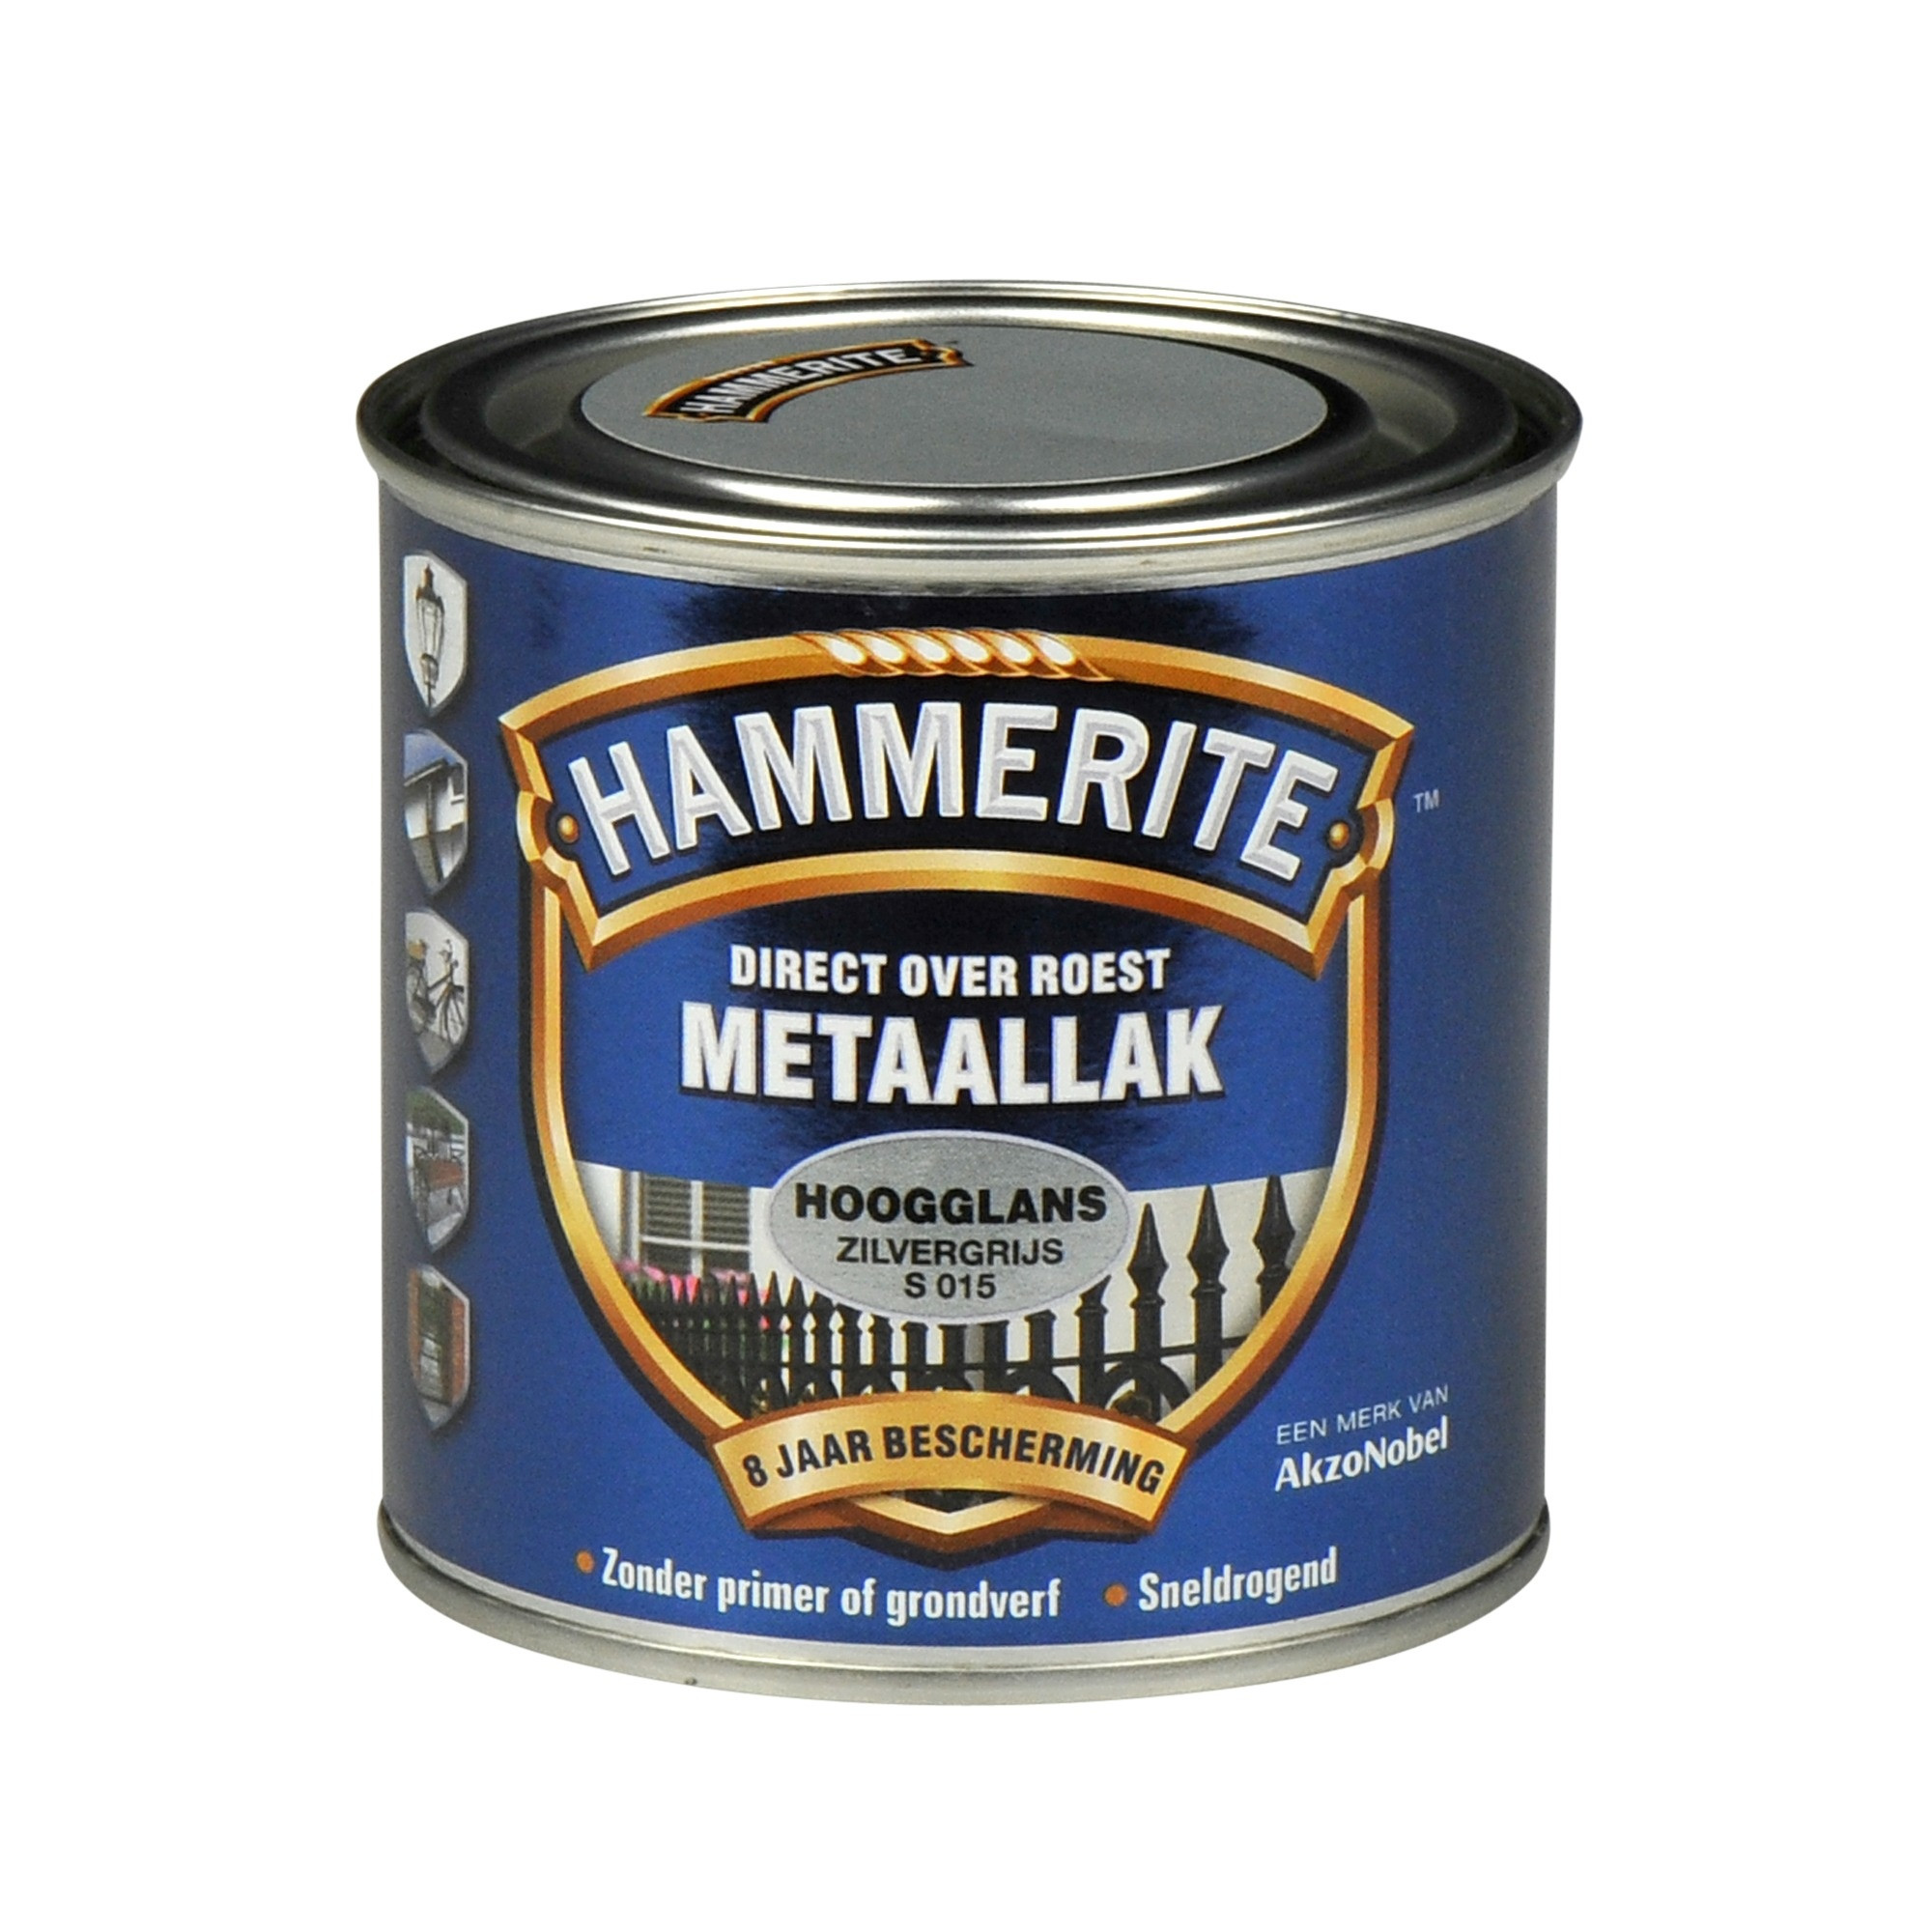 Hammerite Metaallak Direct over Roest Hoogglans - S015 Zilvergrijs